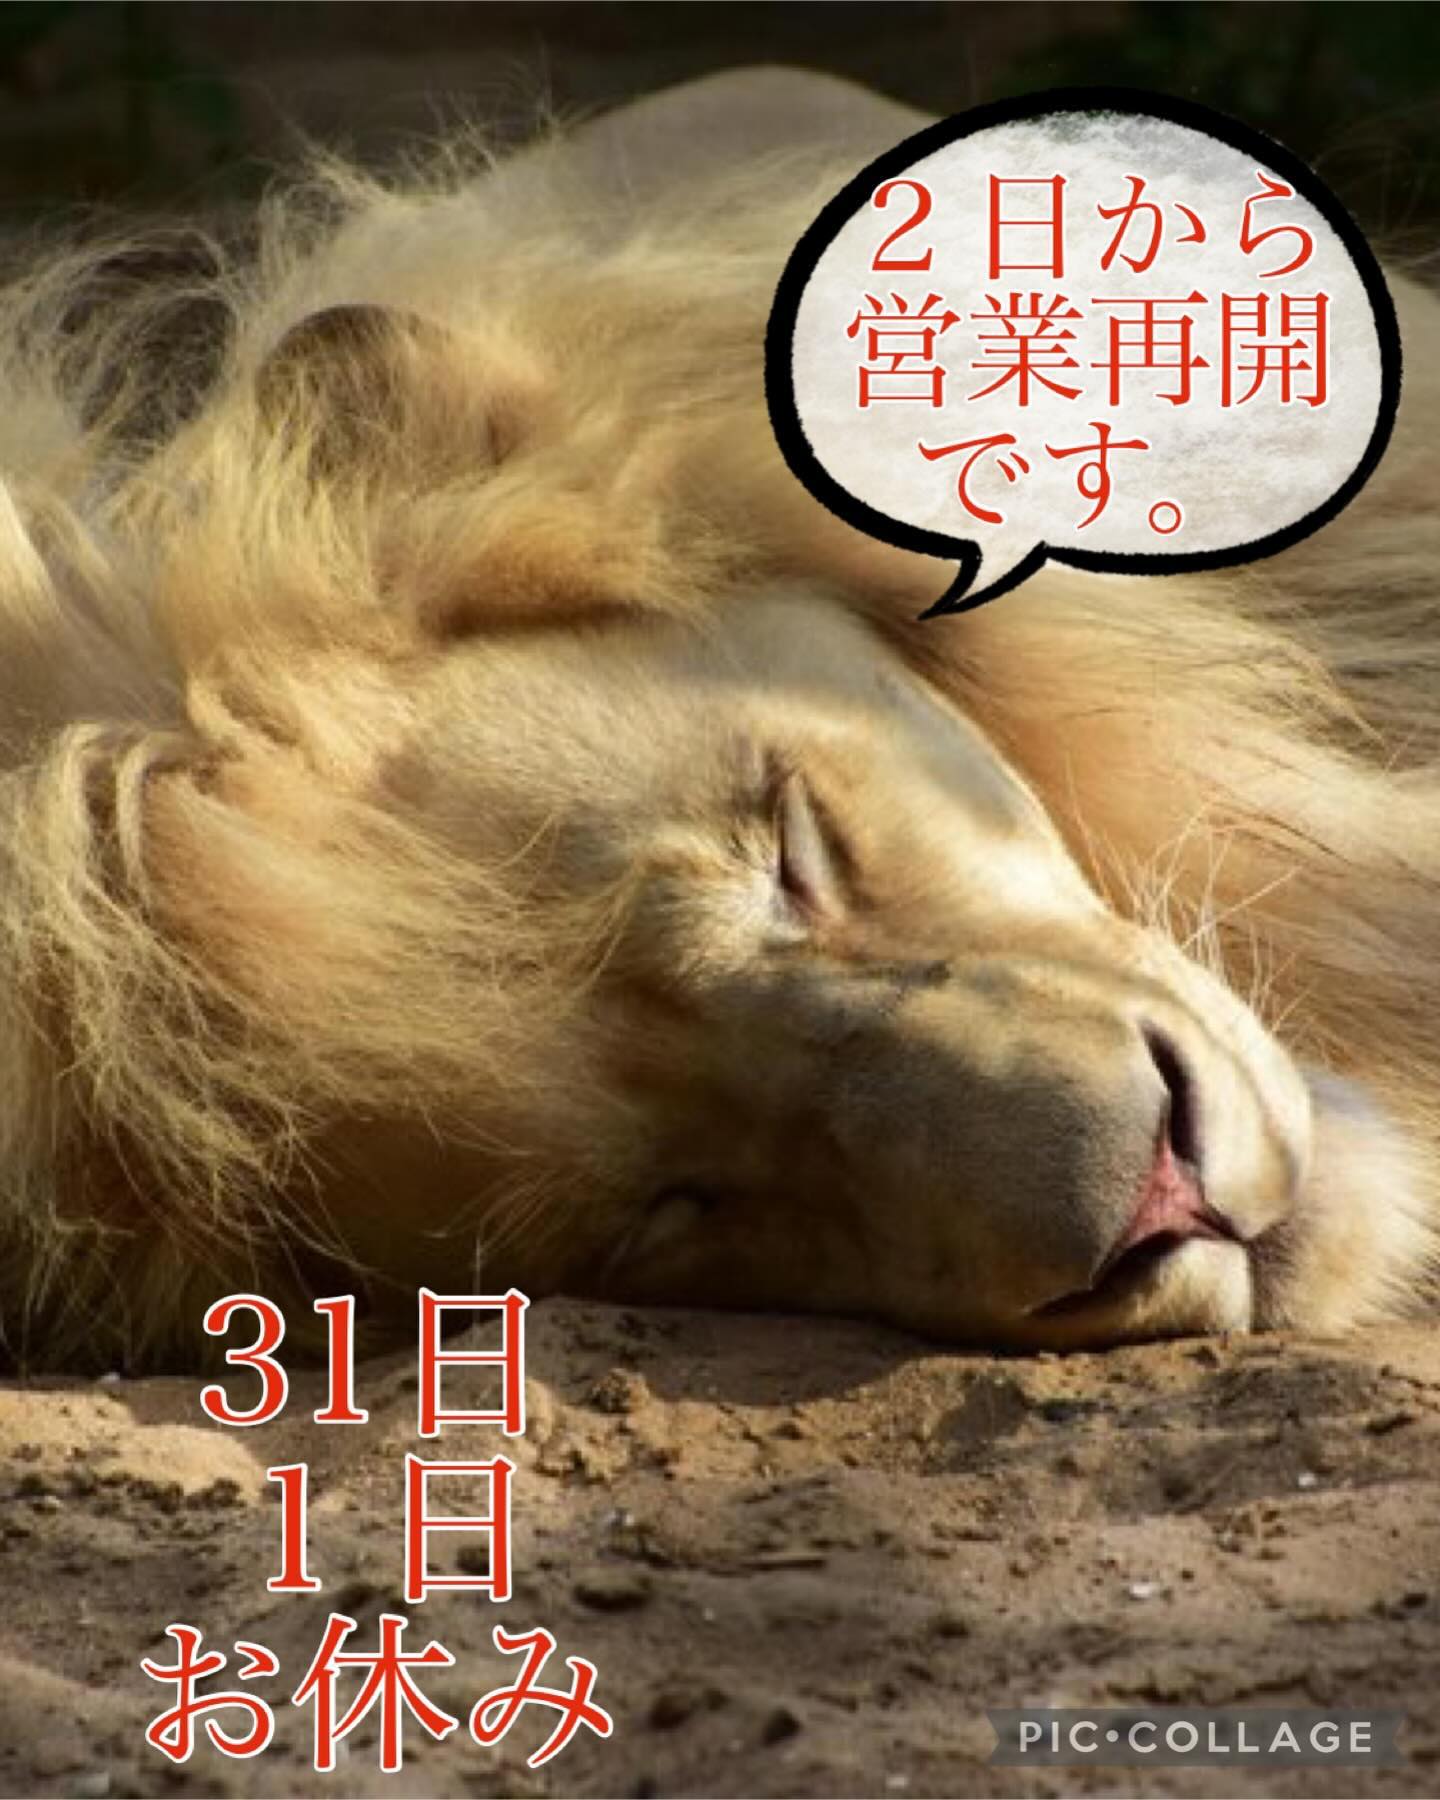 こんばんは！ナベです。
年末年始の笑うライオン営業についてお知らせします。
年内は30日まで営業しております︎
新年は2日からの営業再開ですのでよろしくお願い致します。
#熊谷　 #居酒屋　